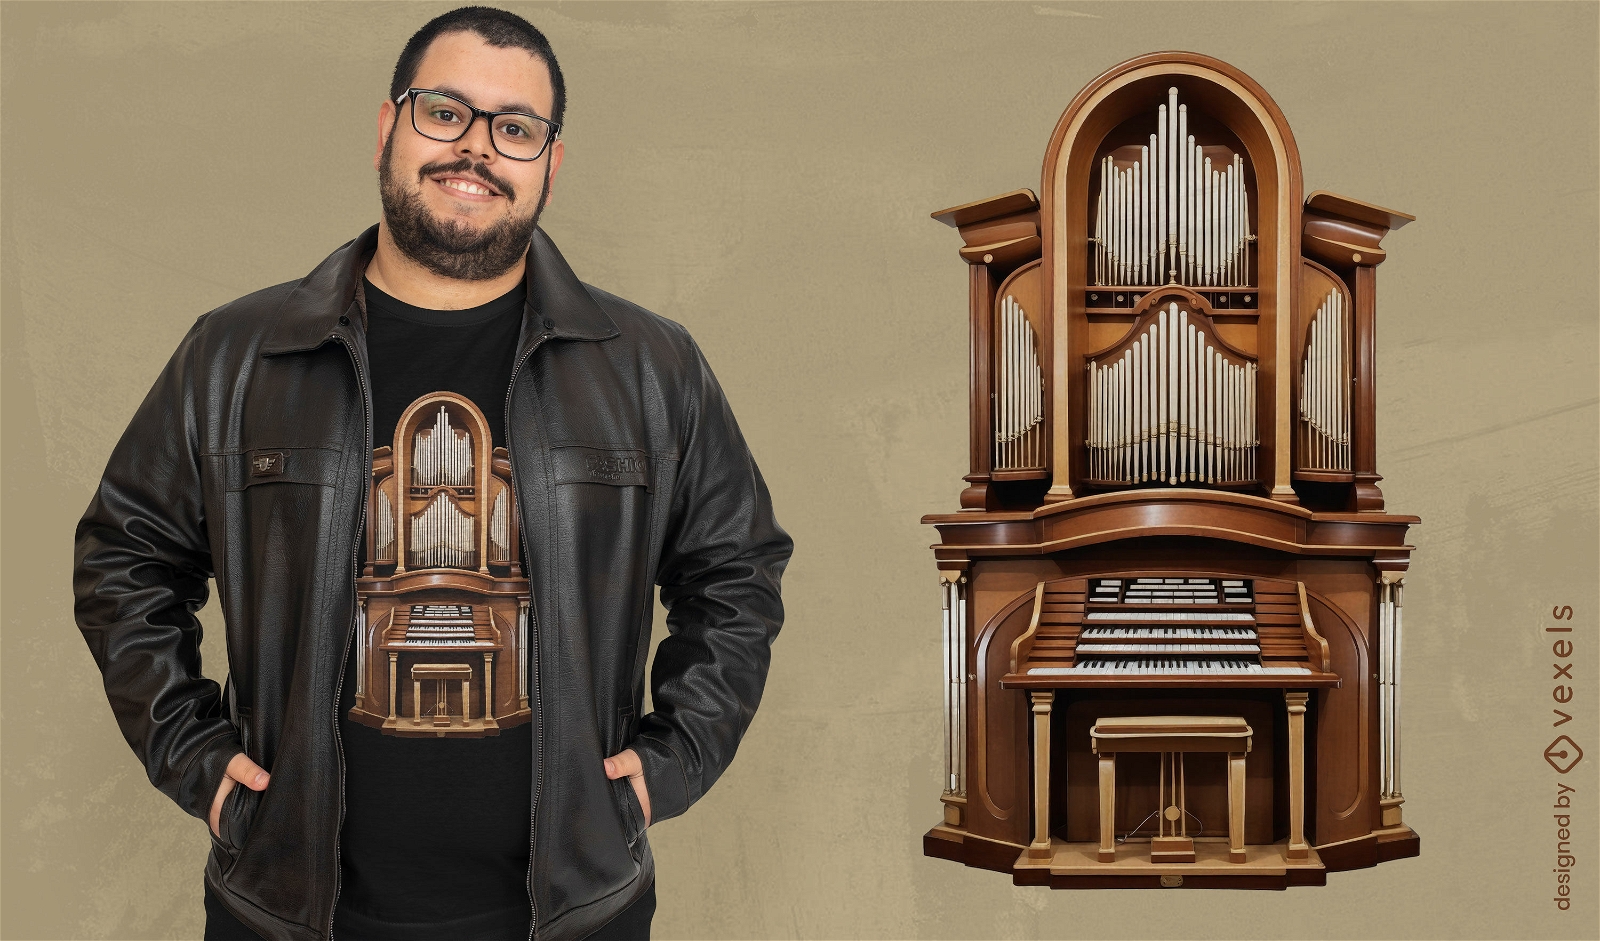 Diseño de camiseta con ilustración de órgano de iglesia.